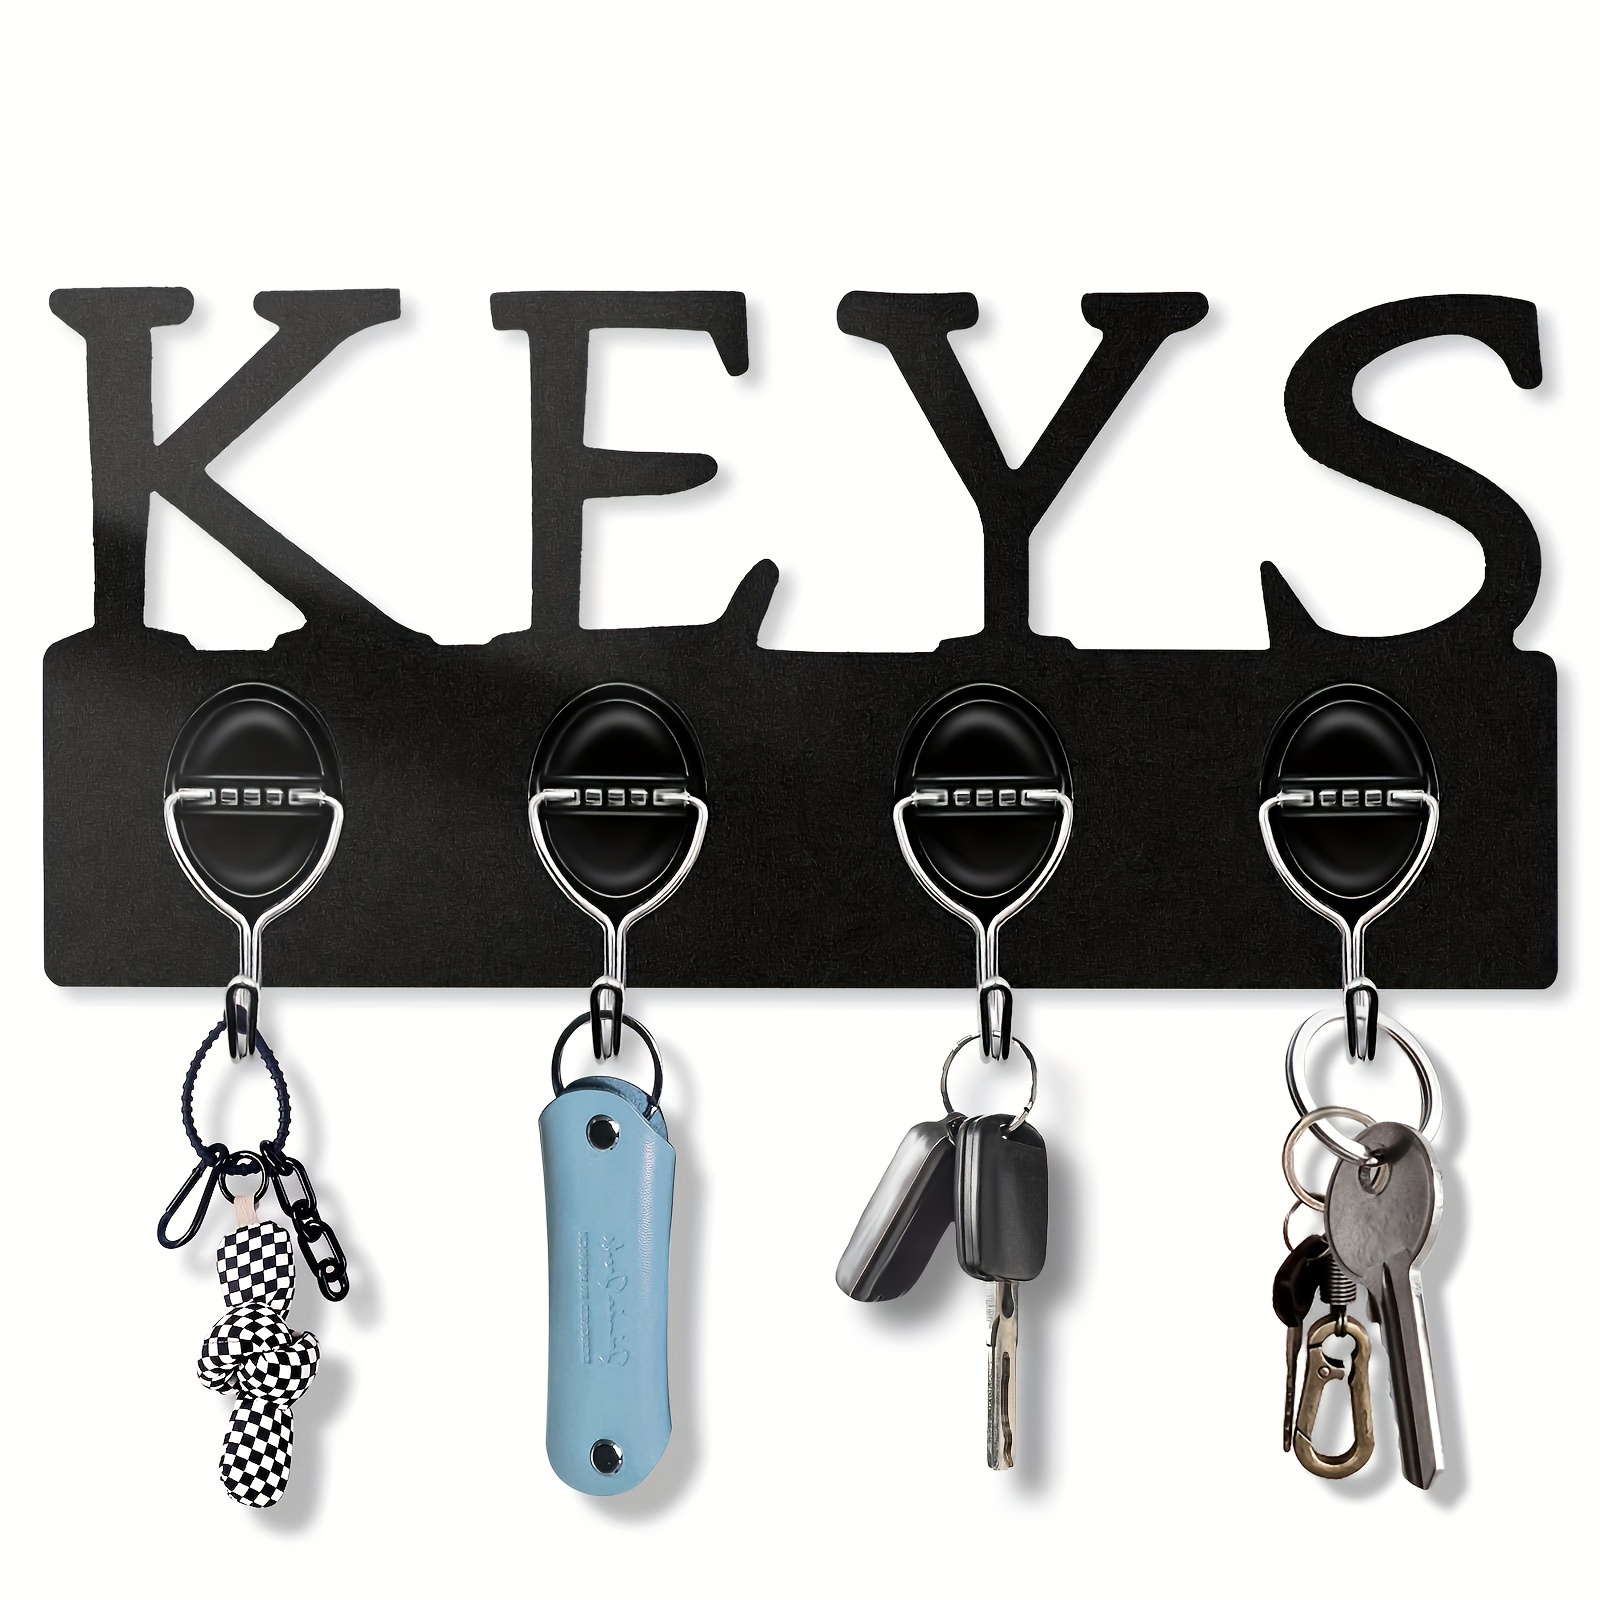 EACHPT Porta llaves de Pared, Cuelga llaves,Colgador llaves con Estante y 6